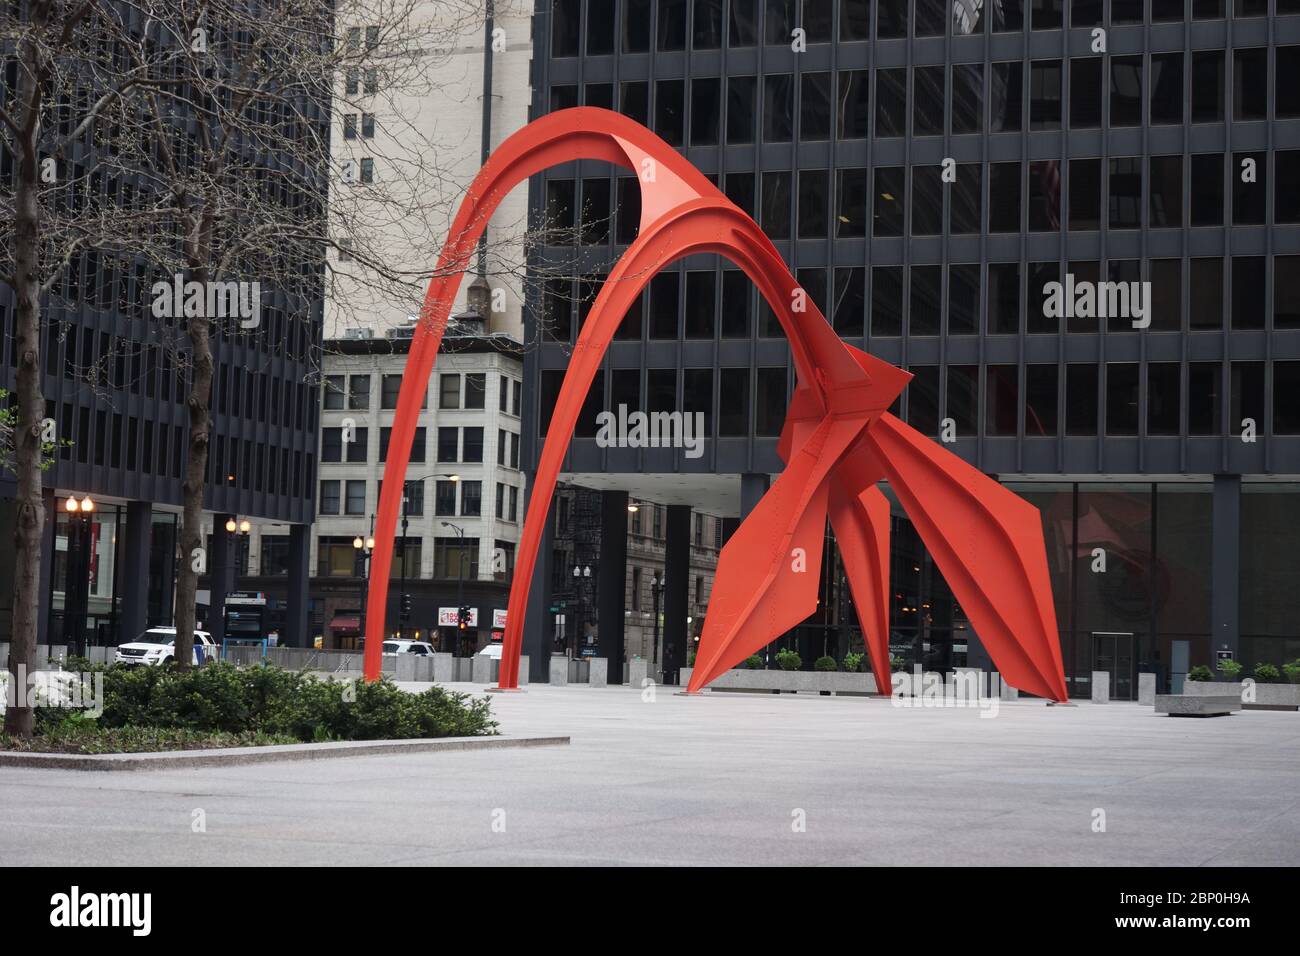 Vue sur une place vide avec la sculpture rouge flamant créée par l'artiste américain Alexander Calder, situé sur la place fédérale à Chicago Banque D'Images